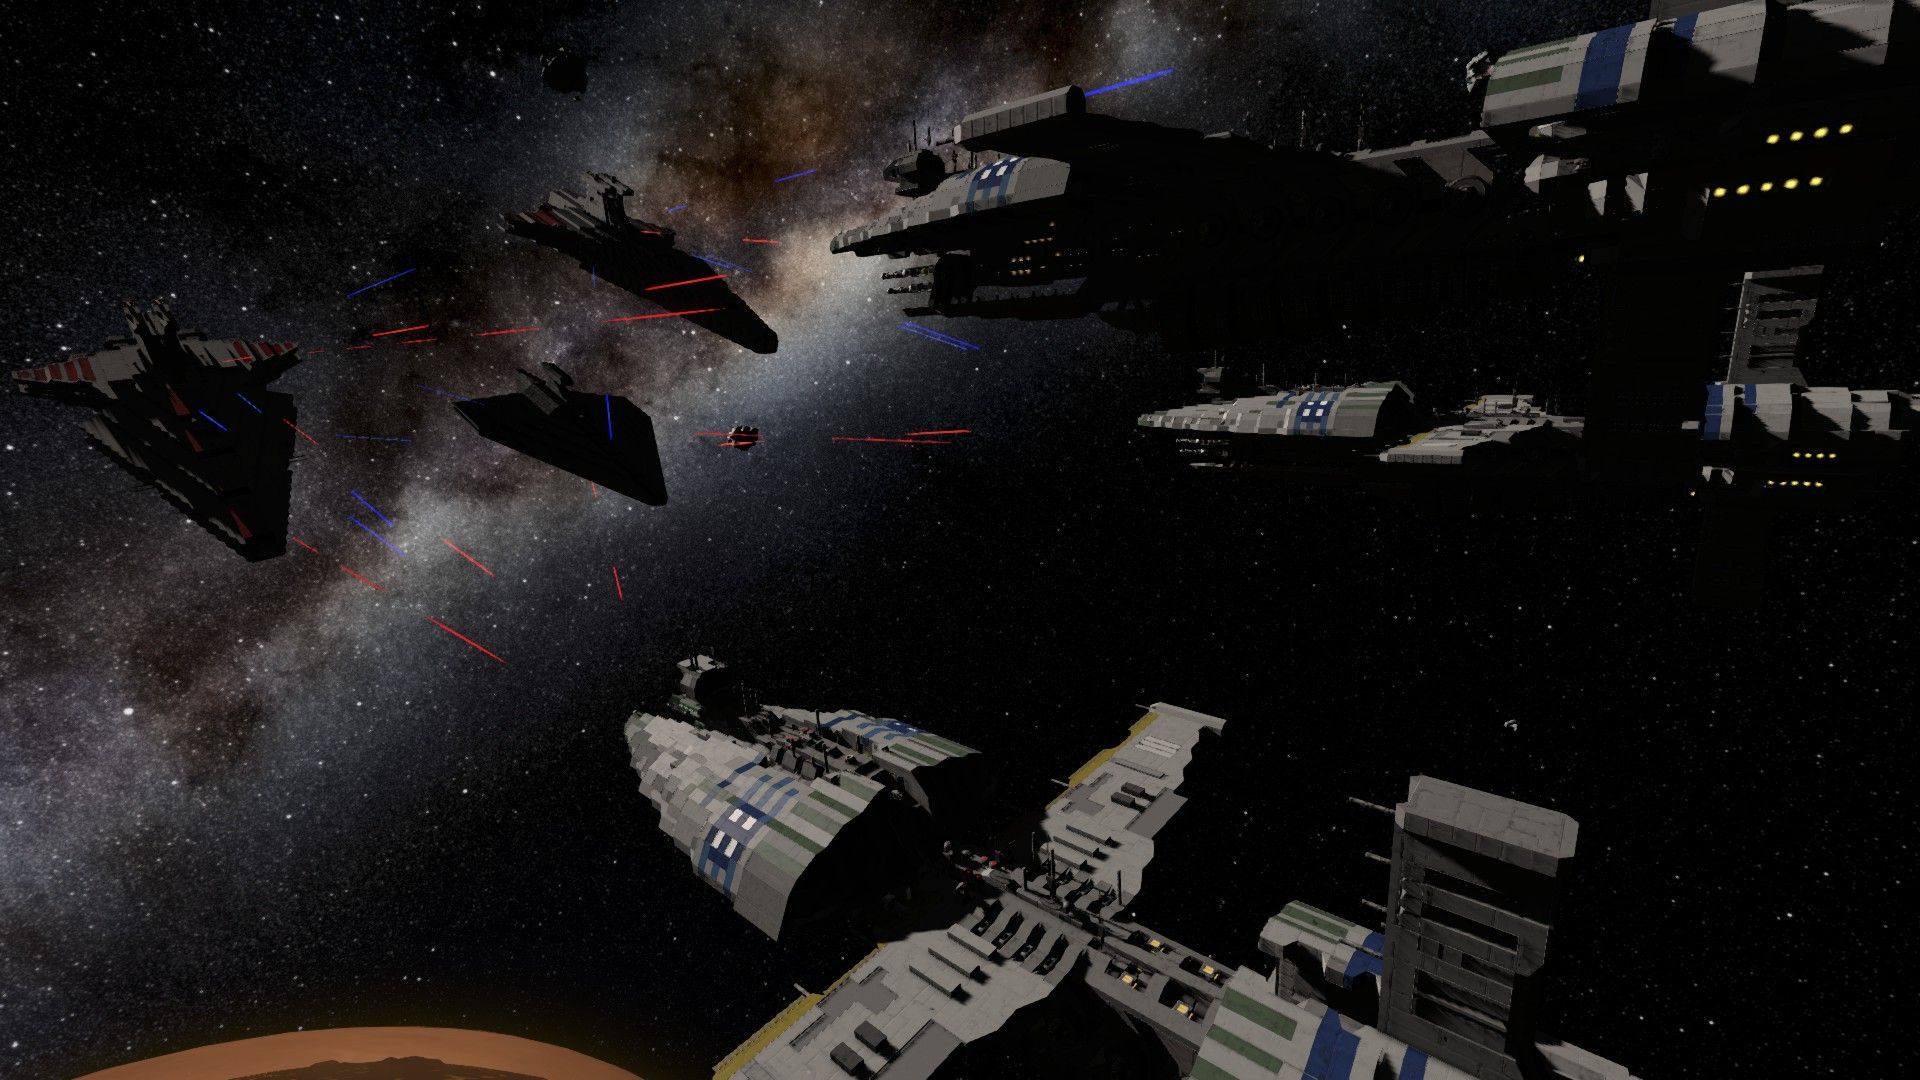 Steam Workshop - Munificent Class Star Frigate (Star Wars). Star Wars, Steam, Fleet